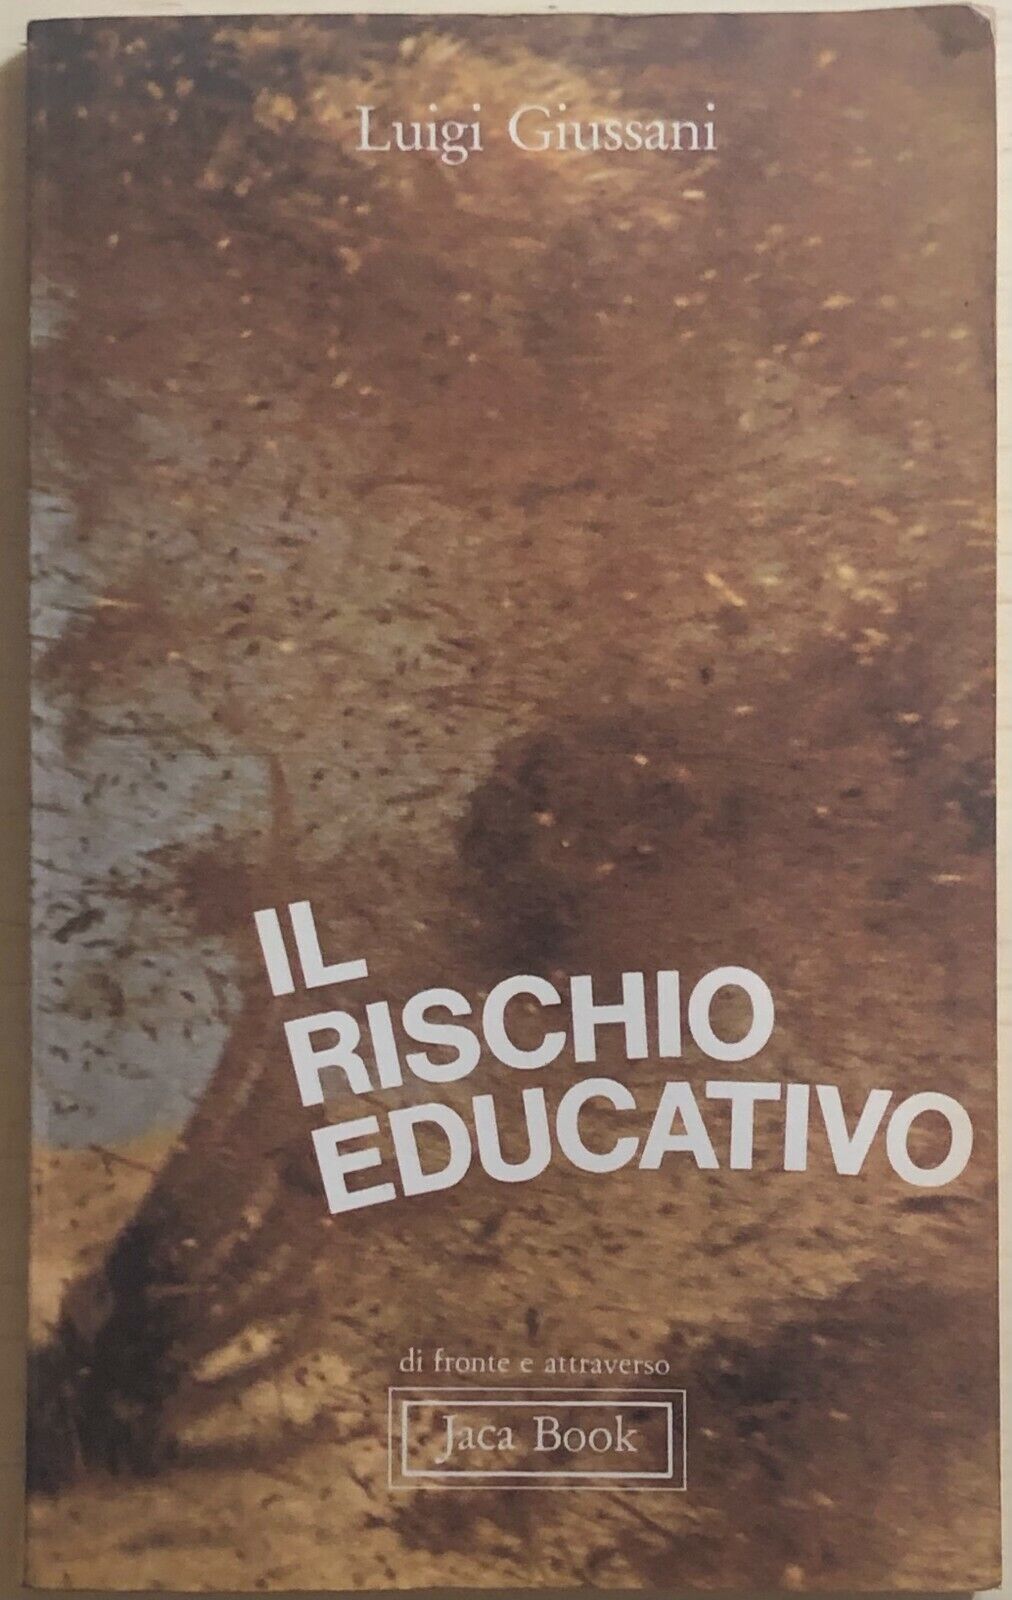 Il rischio educativo di Luigi Giussani, 1977, Jaca Book